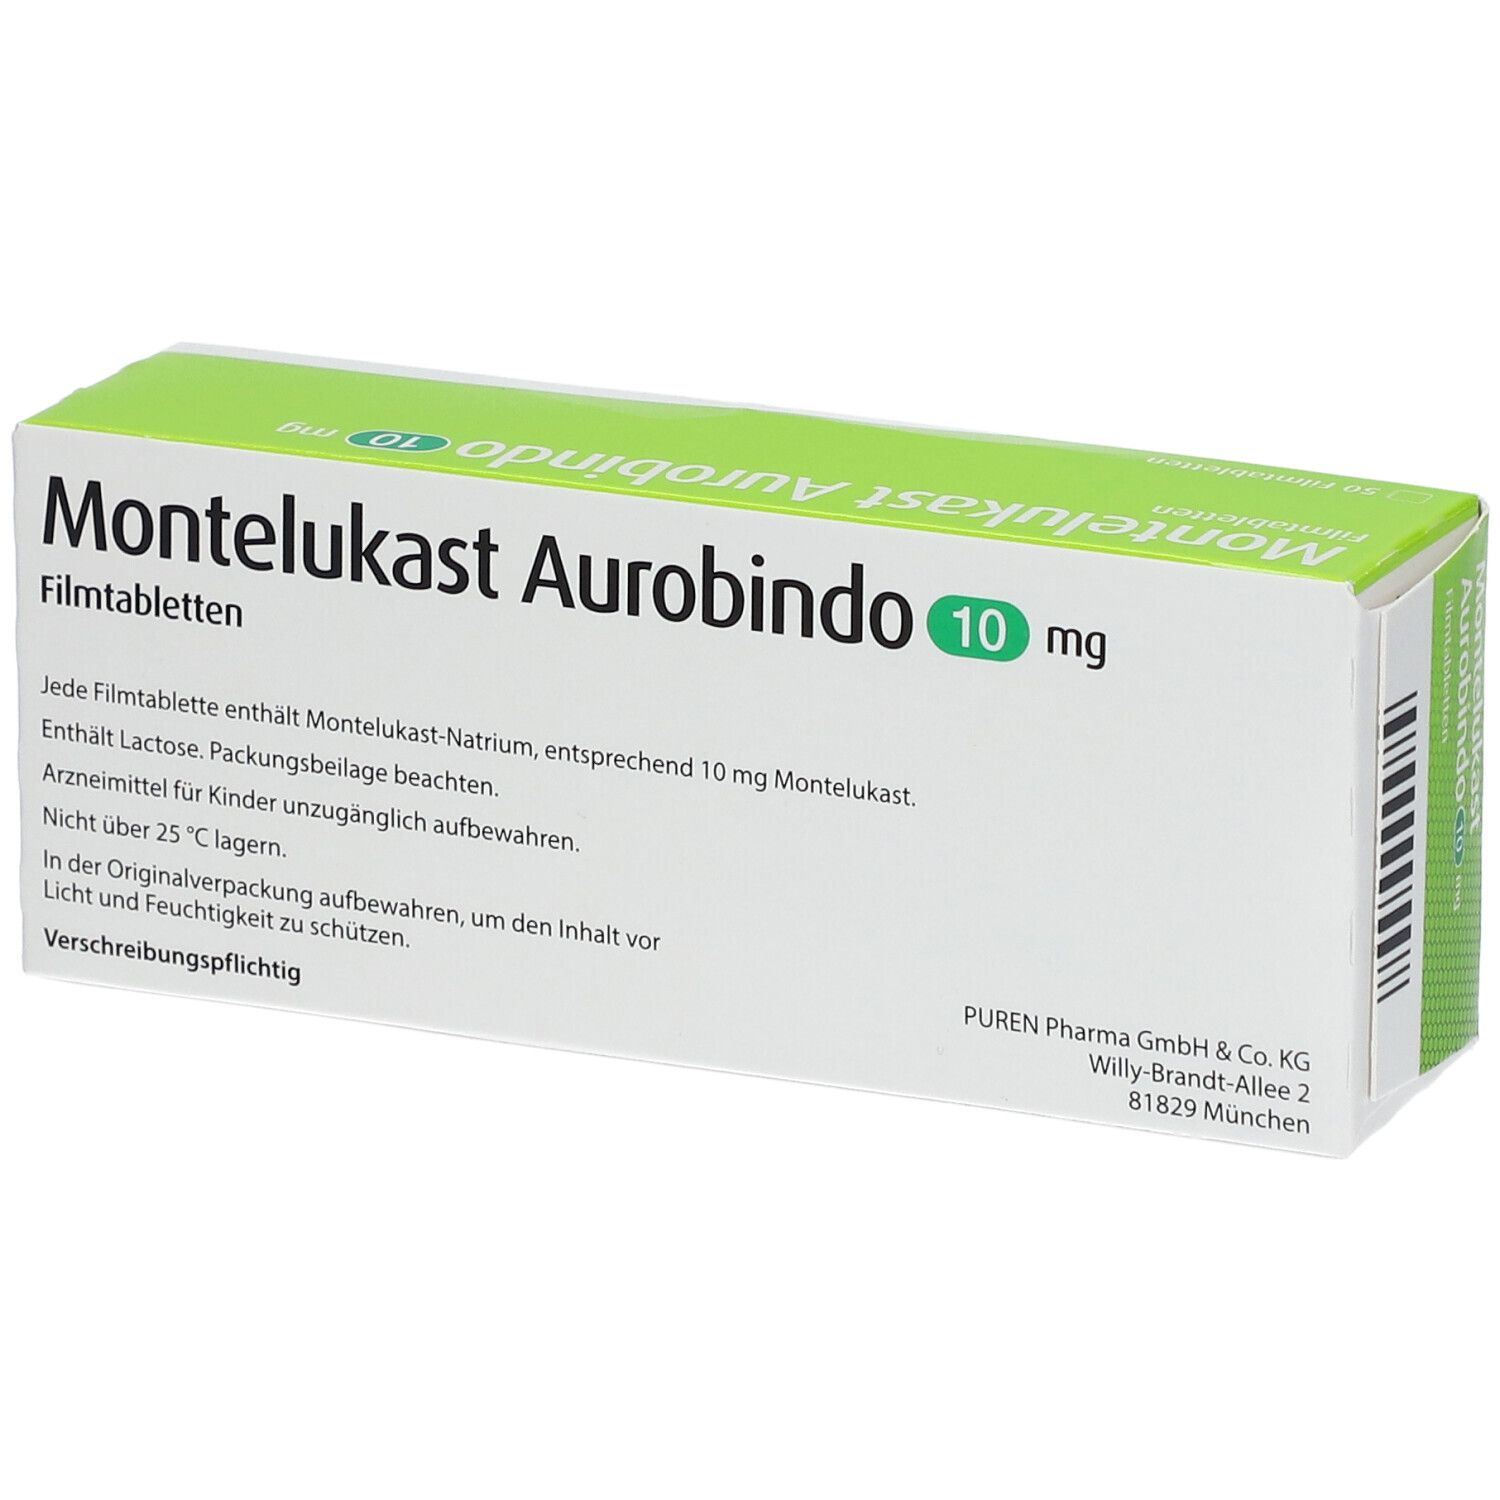 Montelukast Aurobindo 10 mg